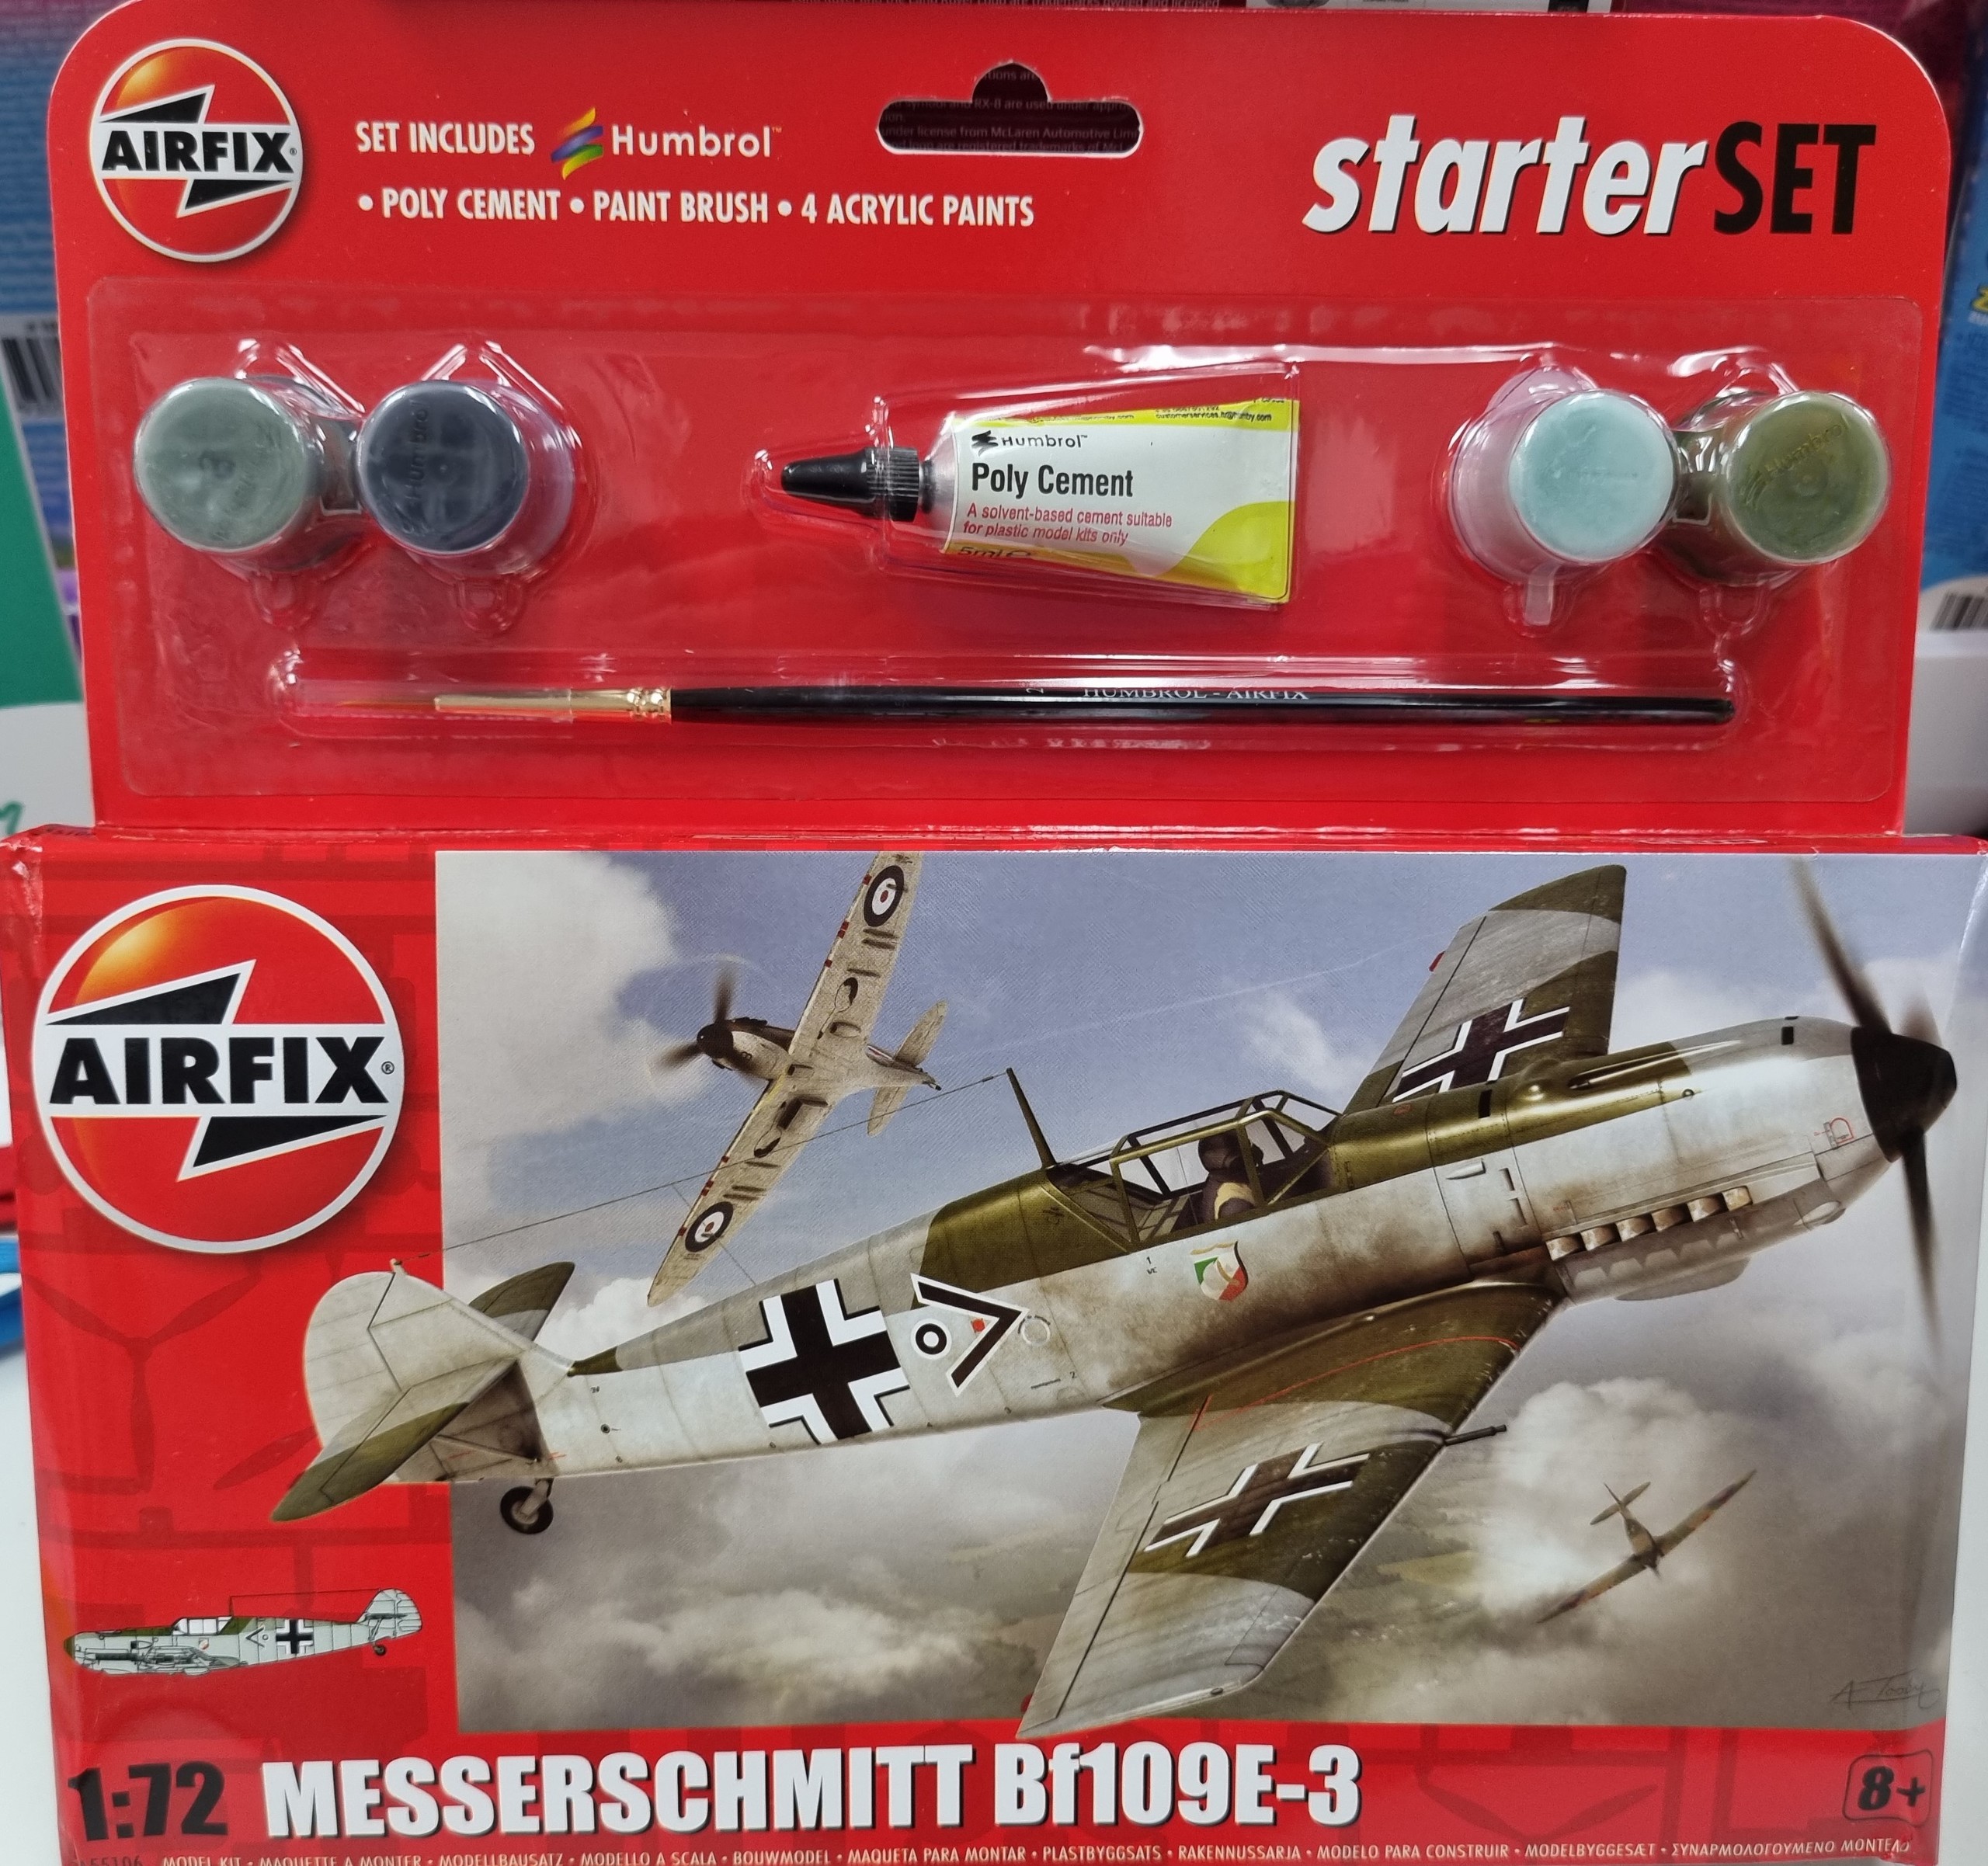 Messerschmitt Bf109E-3 Fighter Plane Kitset 1/72 Airfix Starter Set